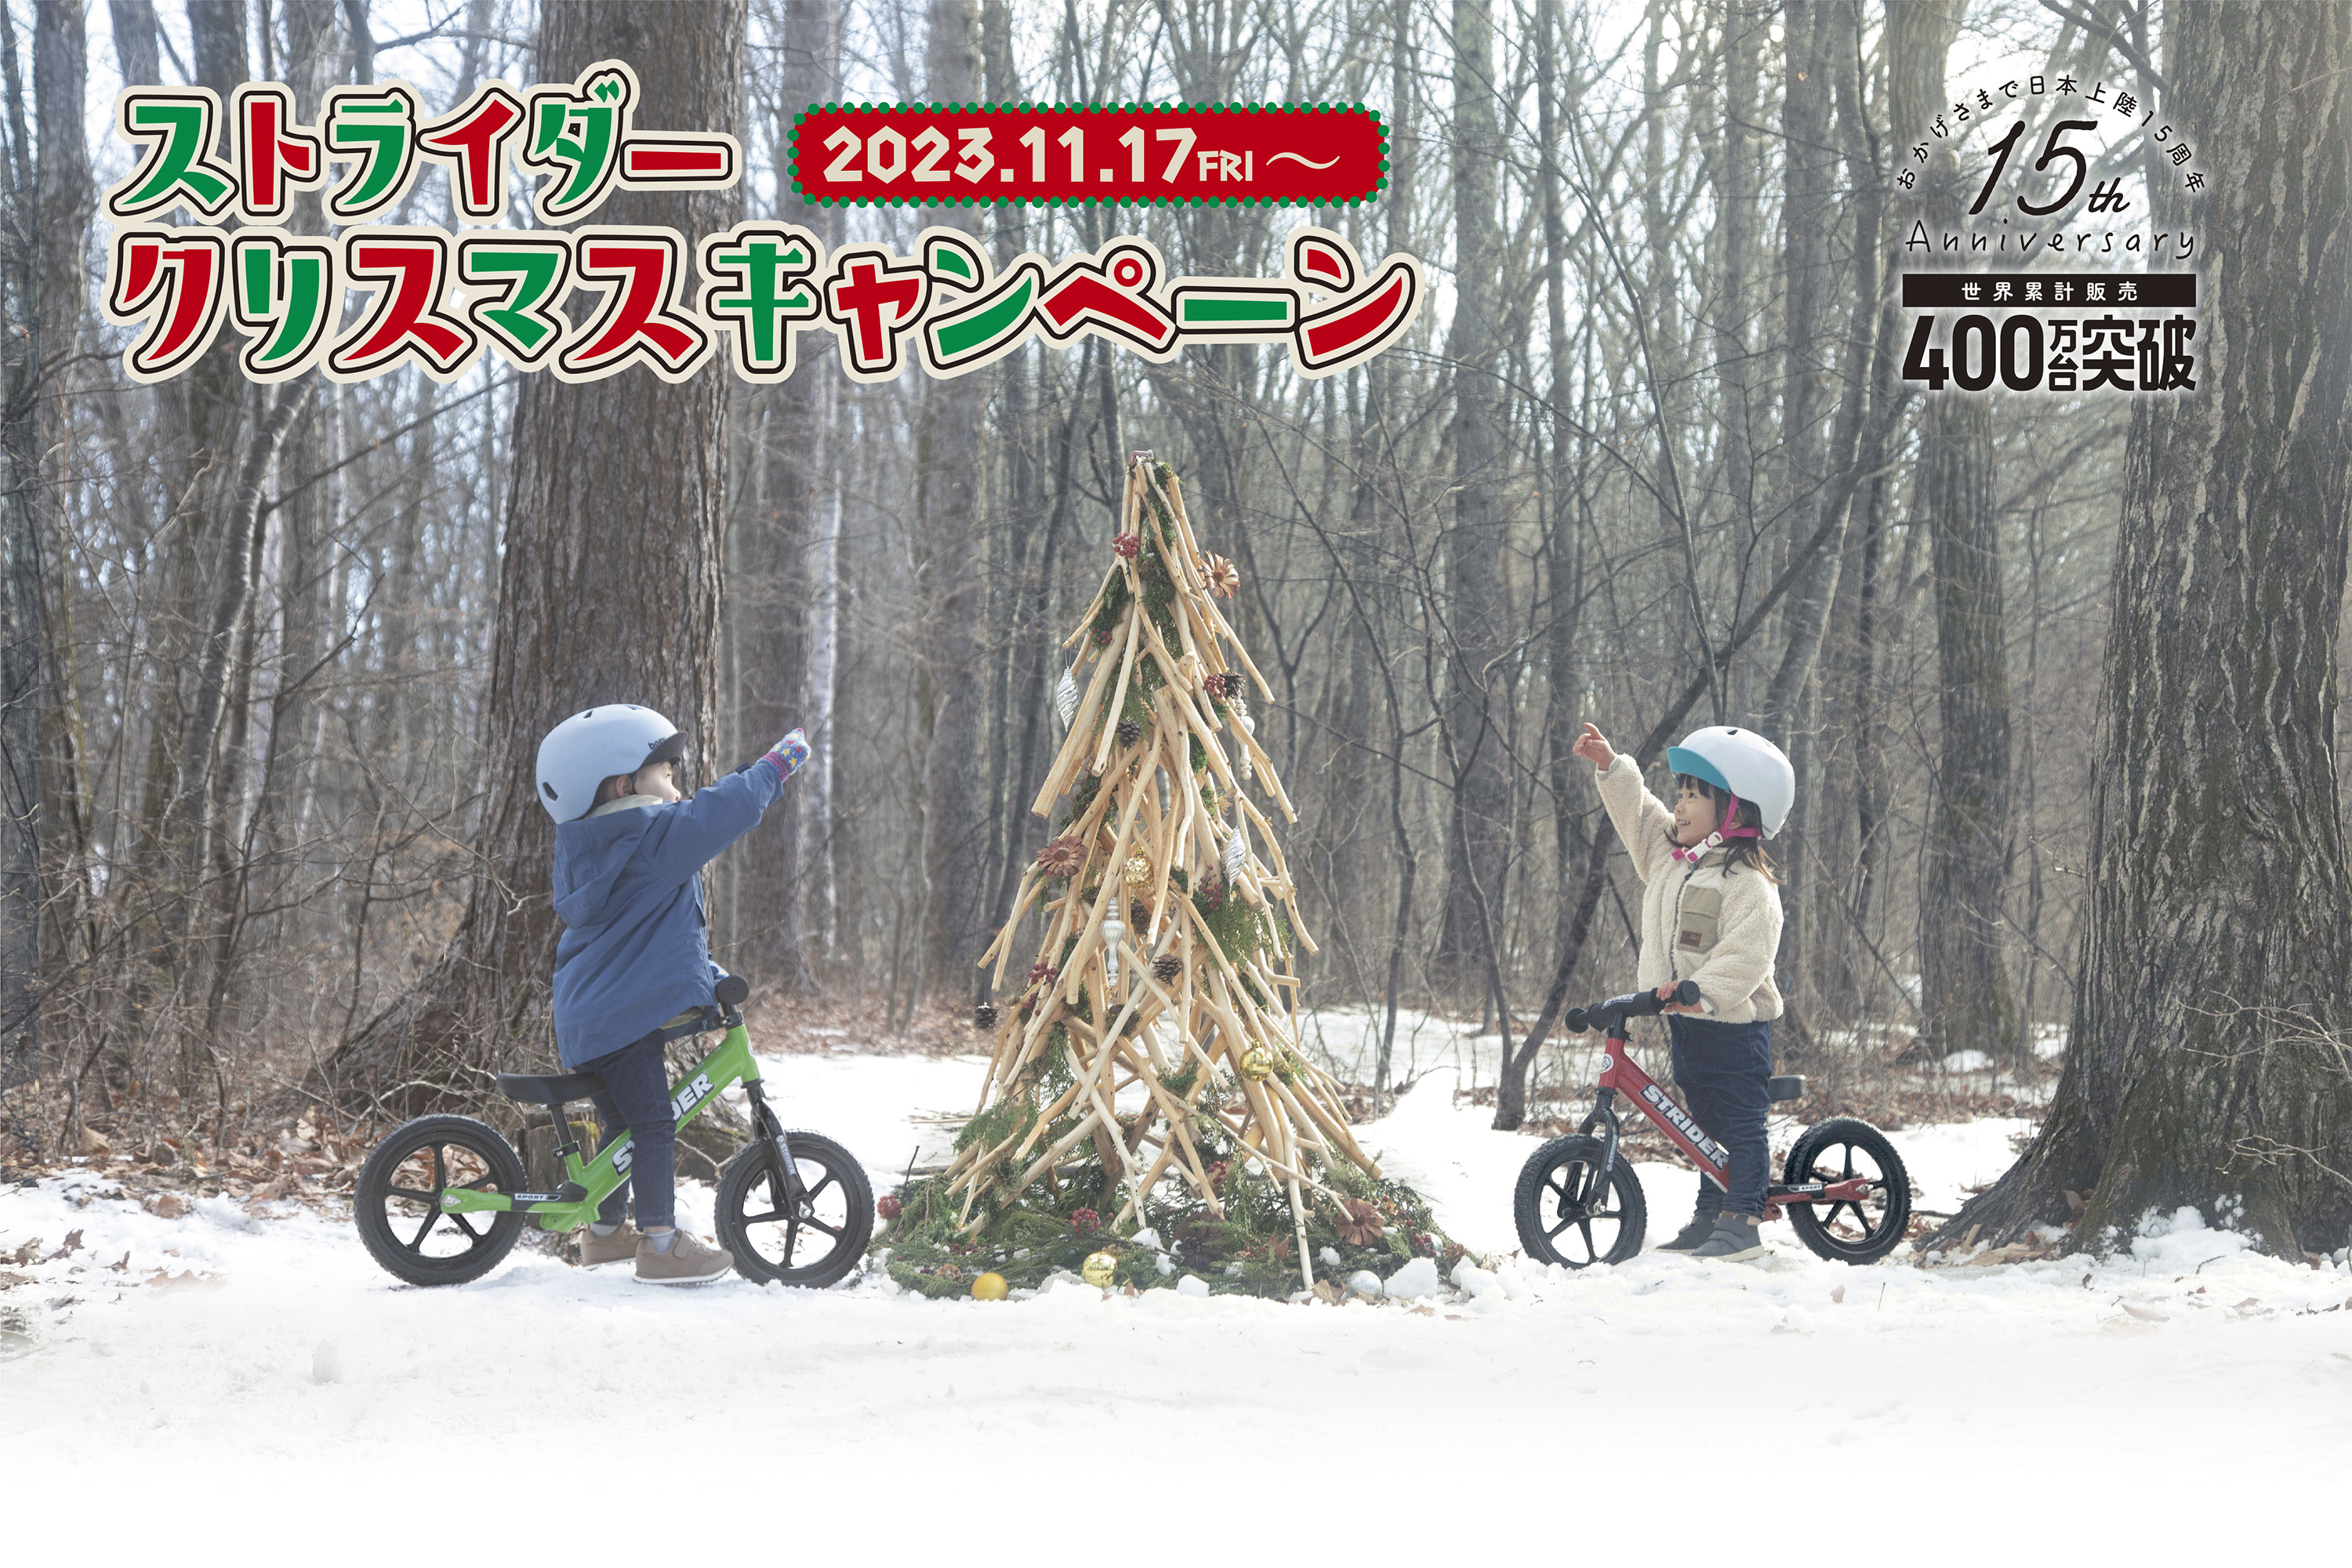 ストライダークリスマスキャンペーン 2023.11.17FRI〜